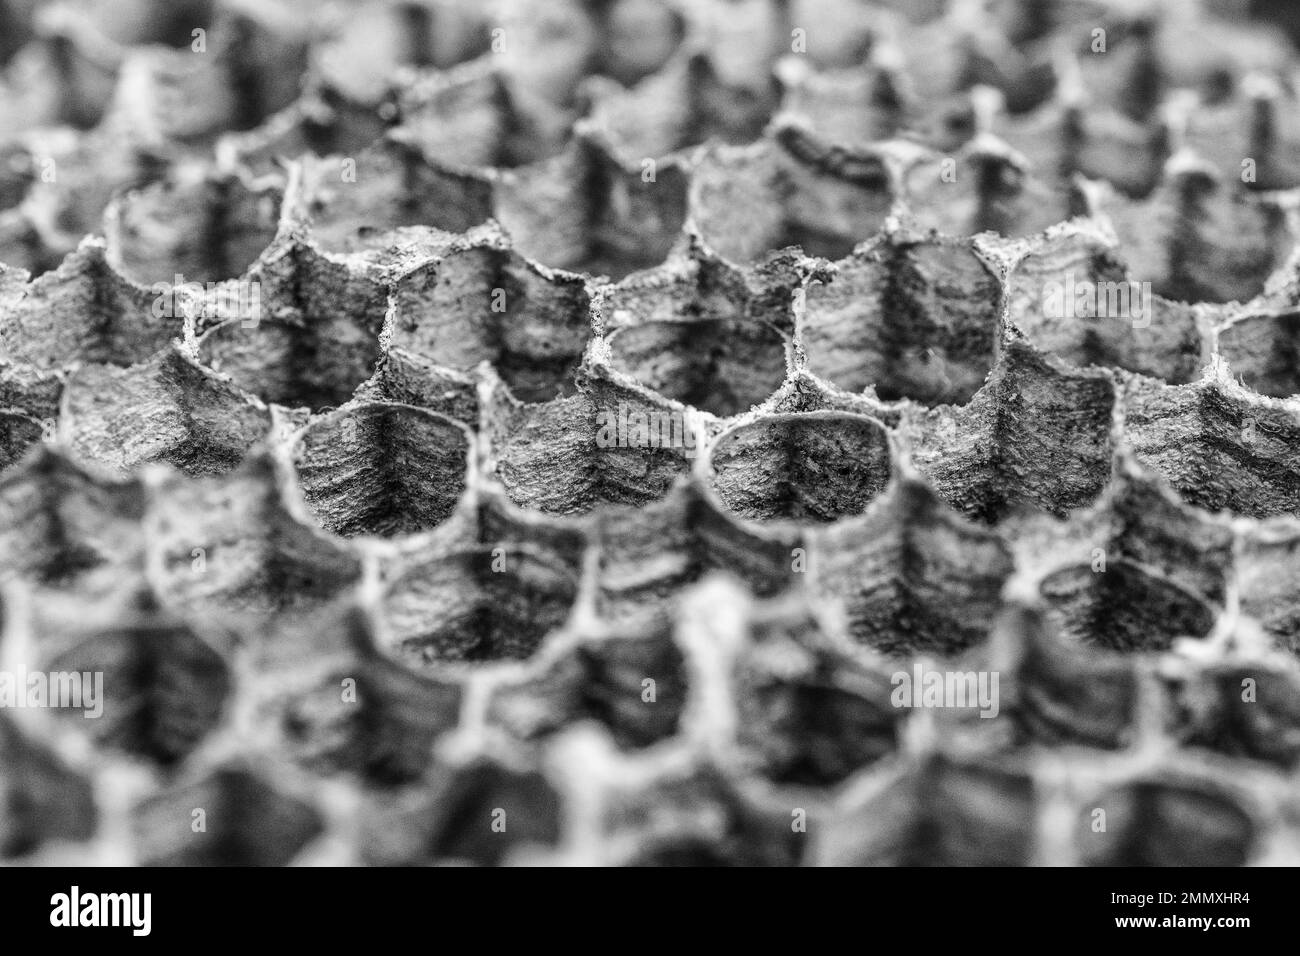 Un primo piano di una parte di nidi di vespe vecchie e vecchie che mostrano la forma esangolata delle celle Foto Stock